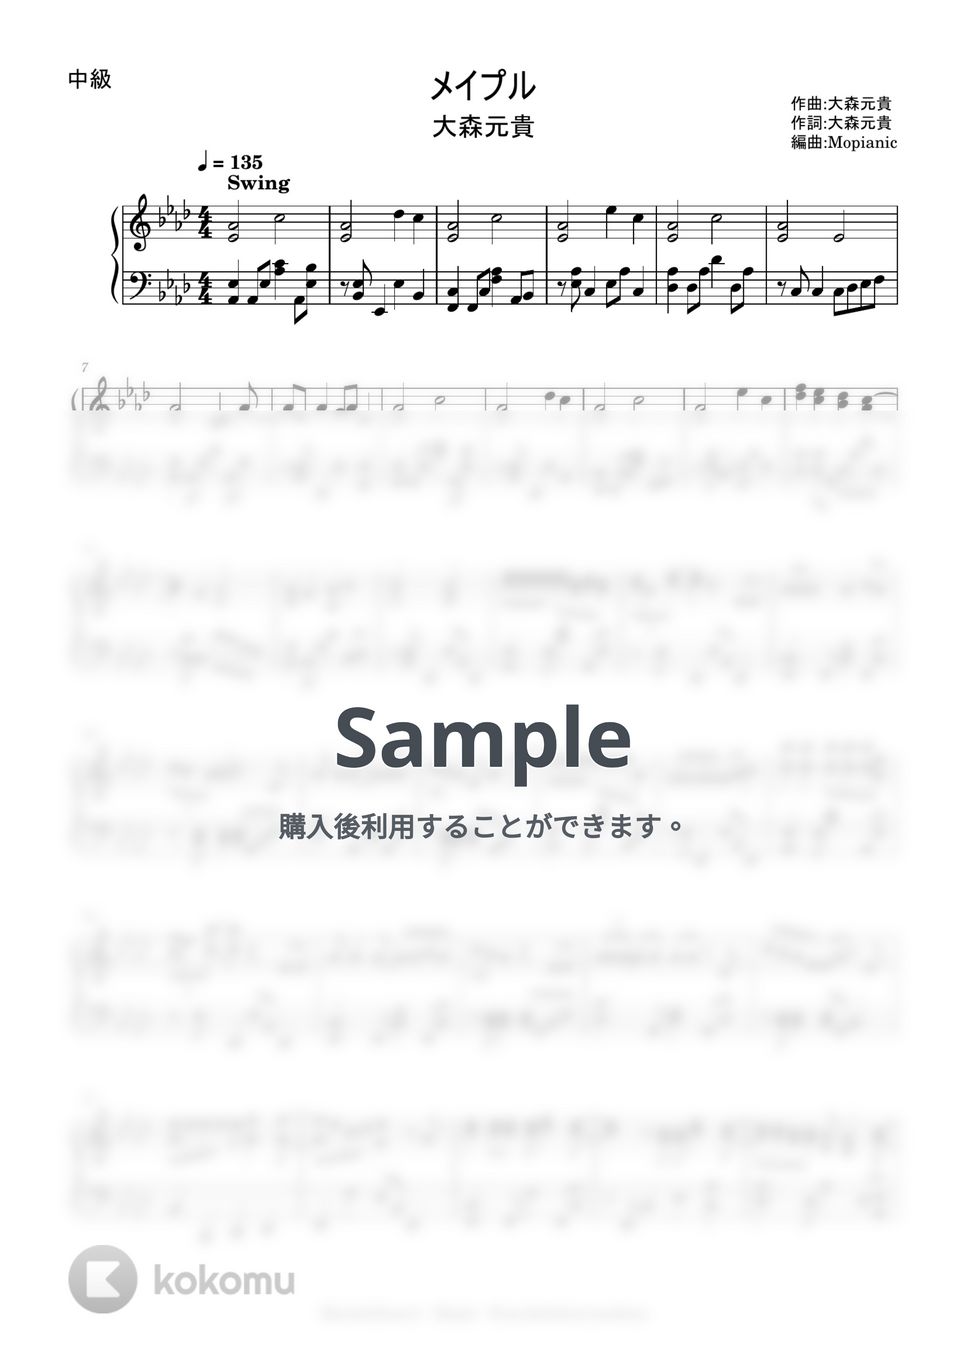 大森元貴 - メイプル(intermediate, piano) by Mopianic